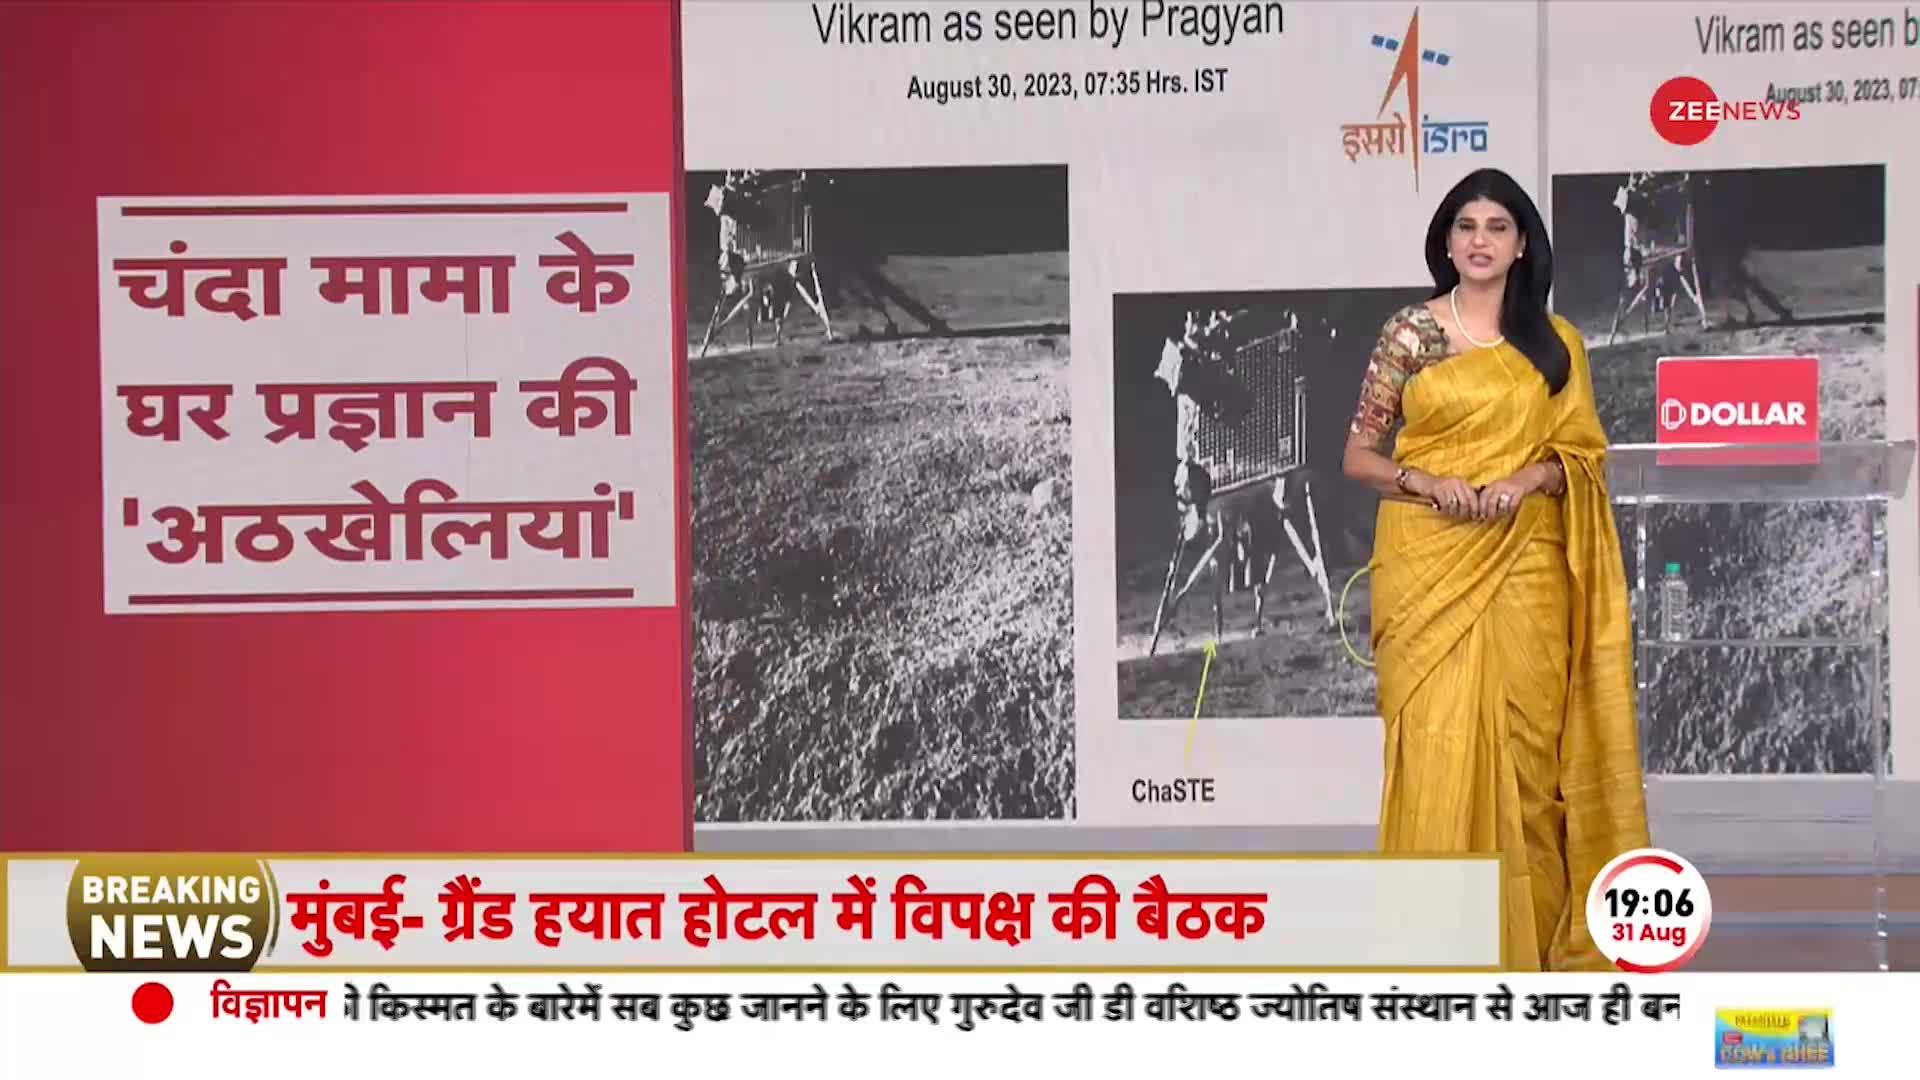 Chandrayaan-3: ISRO ने जारी किया प्रज्ञान का नया वीडियो, ISRO ने कहा प्रज्ञान अठखेलियां कर रहा है